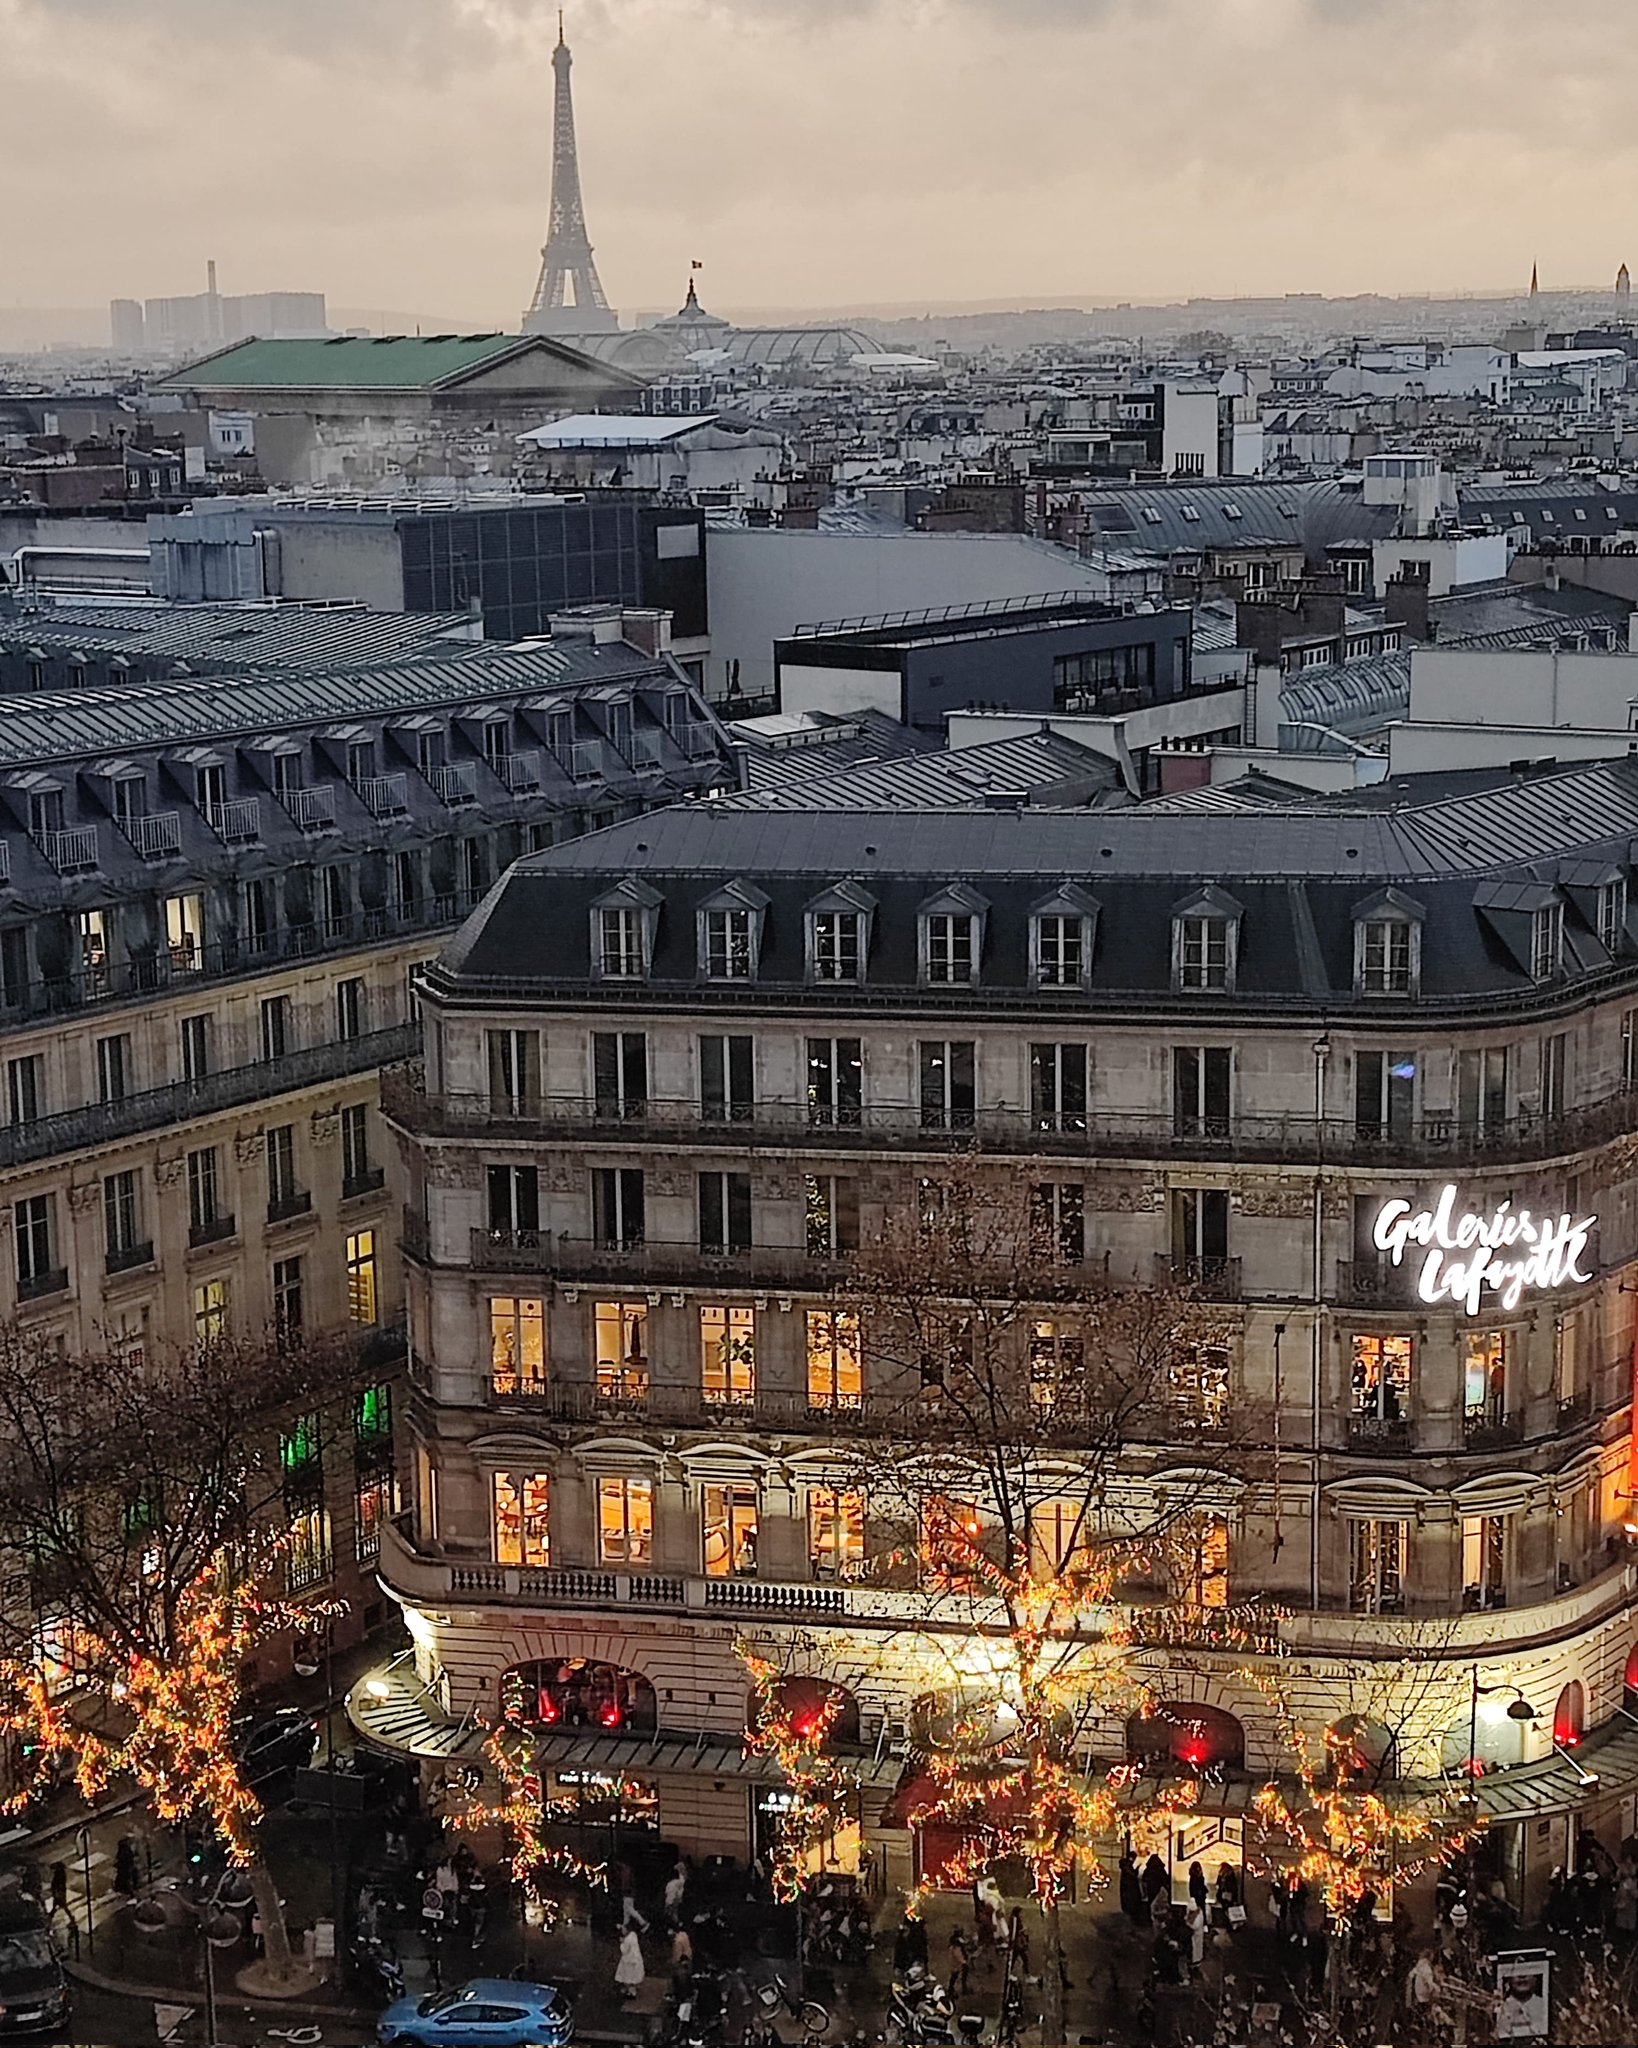 JL Dmg on X: Rooftop Galeries Lafayette Paris #rooftop #Paris